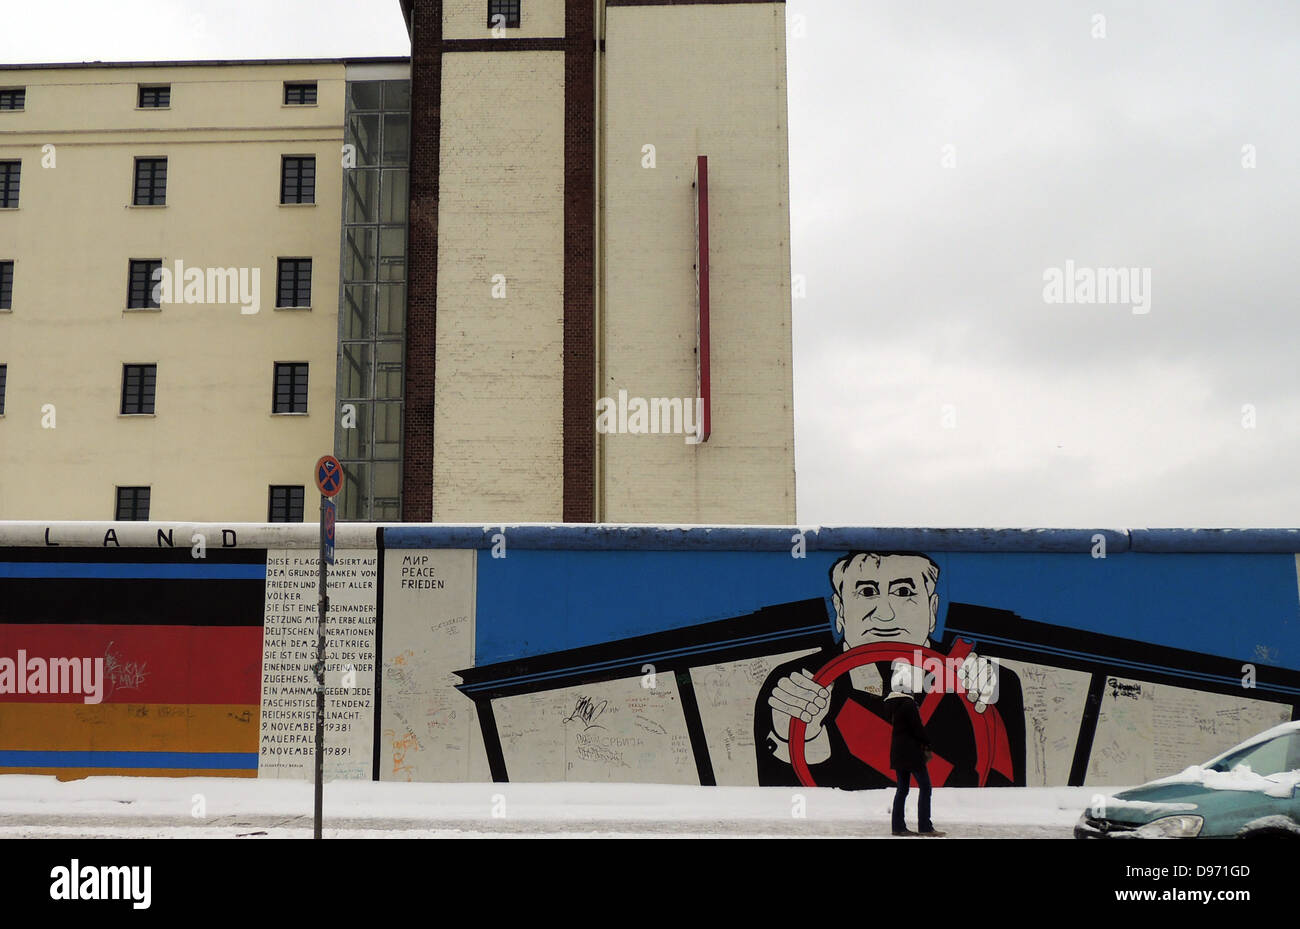 El muro de Berlín 1961-1989. Graffiti en la parte restante de la pared. La barrera construida por la Alemania oriental cortado completamente (por tierra), Berlín Occidental desde que rodea la parte oriental de Alemania y en Berlín Oriental. La barrera incluye torres de vigilancia colocados a lo largo de grandes muros de hormigón que circunscribe un área amplia (más tarde conocida como la 'muerte strip') que contenía anti-vehículo trincheras y otras defensas. Alrededor de 5.000 personas intentaron llegar a través de la pared, con una tasa de mortalidad de más de 600. Foto de stock